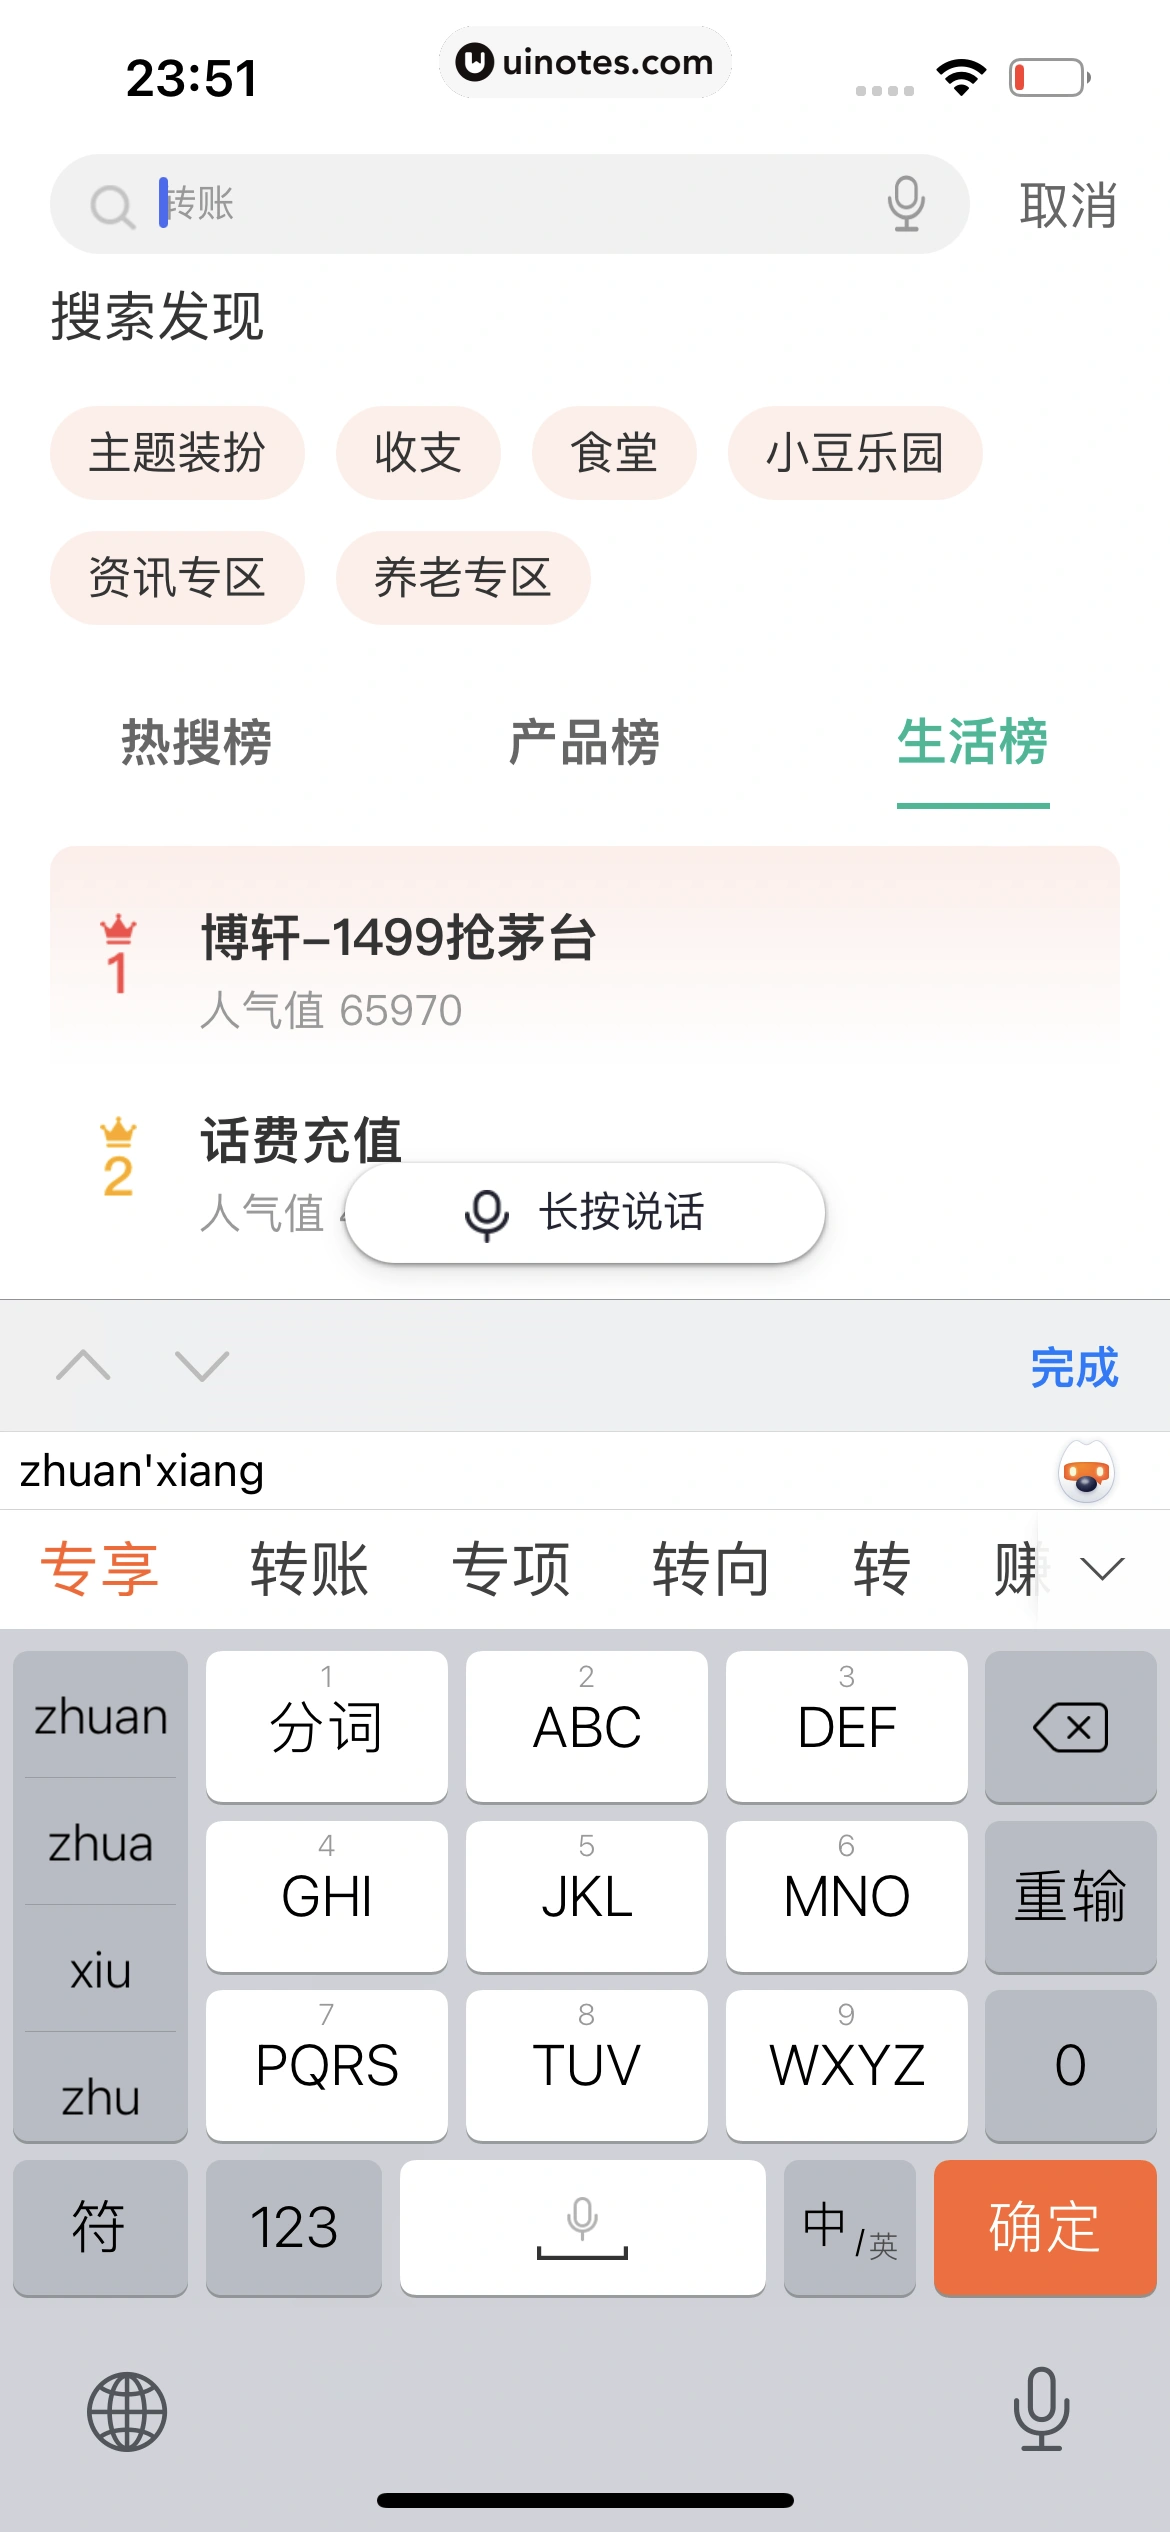 中国农业银行 App 截图 199 - UI Notes